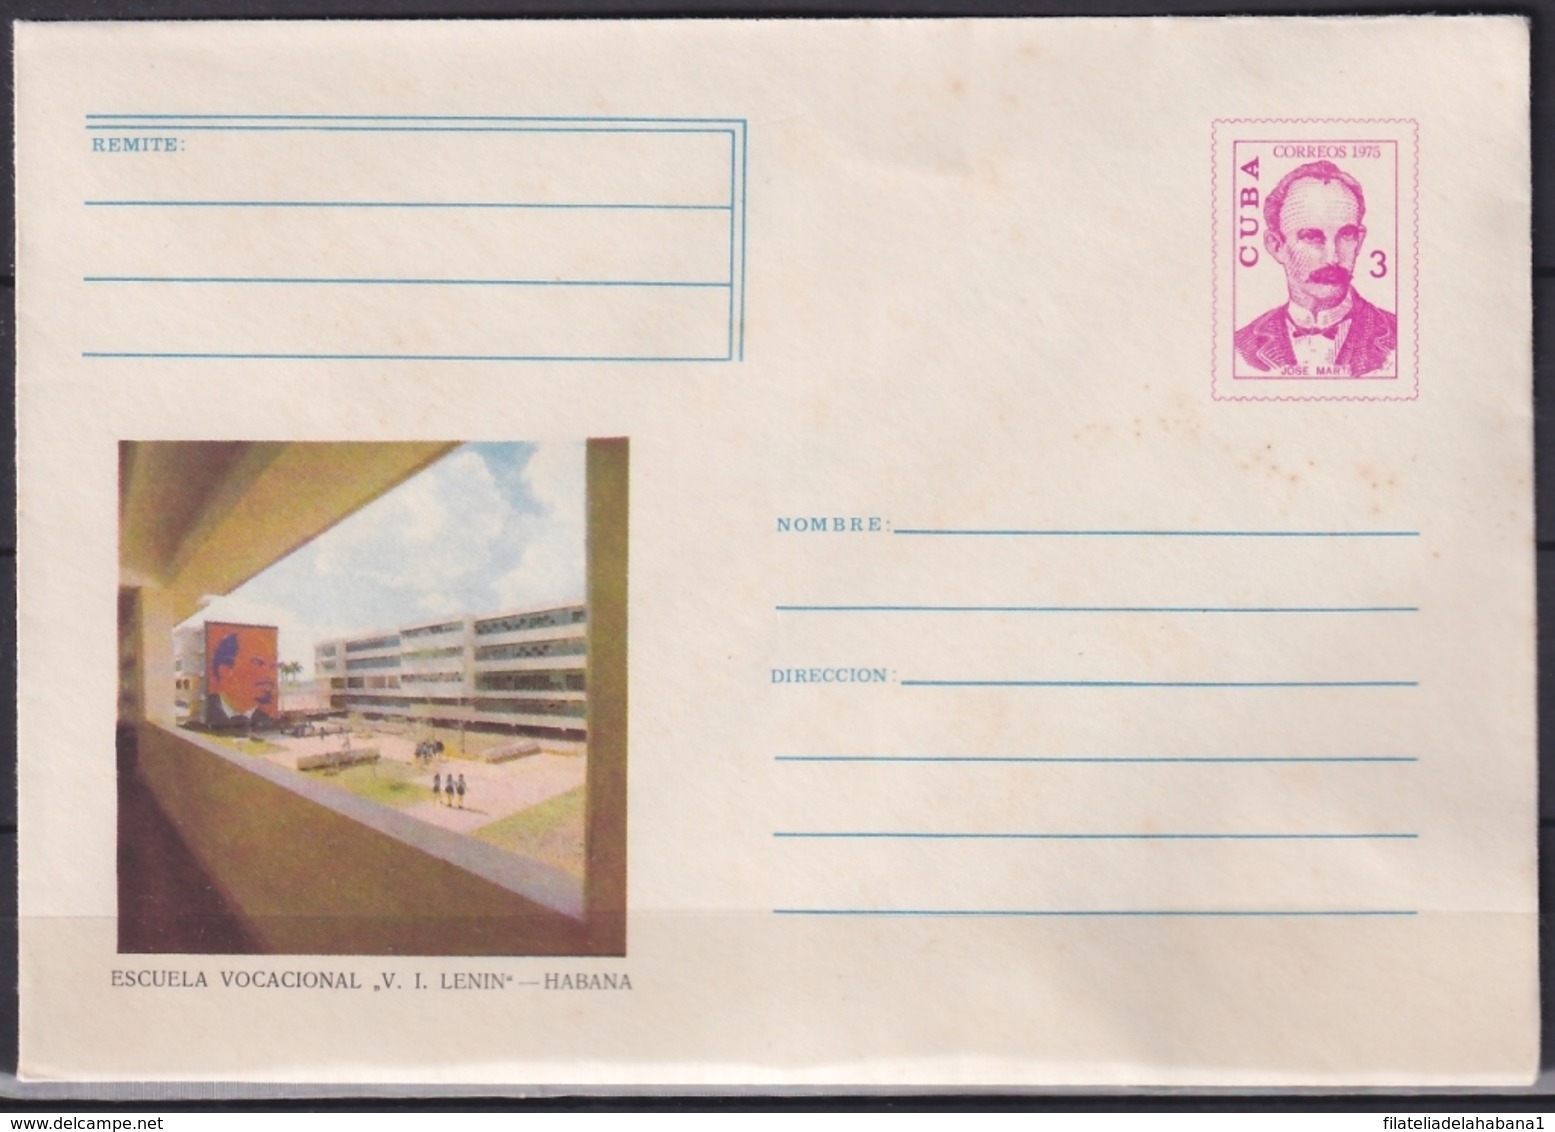 1975-EP-113 CUBA 1975 3c POSTAL STATIONERY COVER. HAVANA, ESCUELA VOCACIONAL LENIN. MANCHAS. - Cartas & Documentos